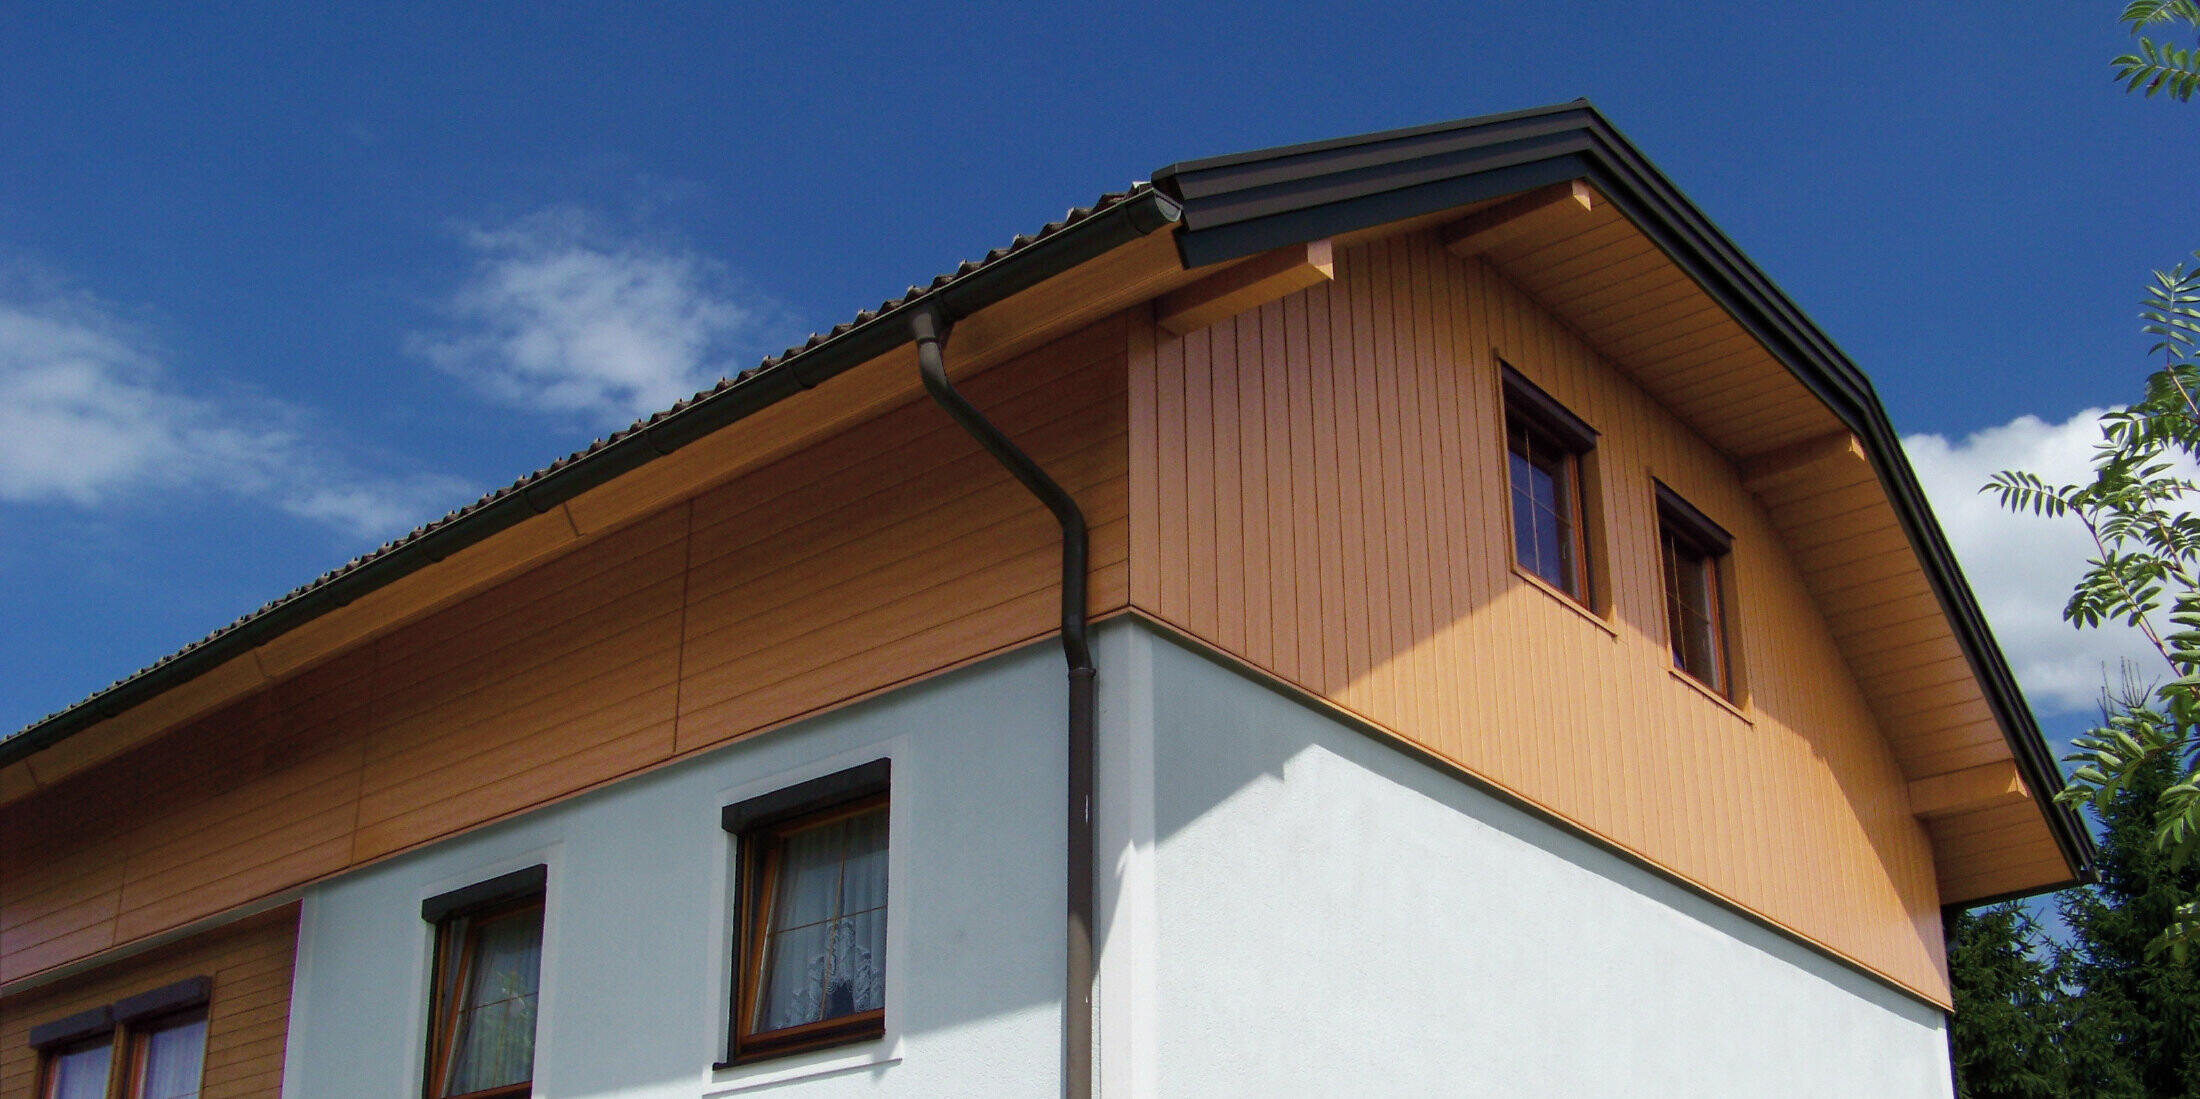 Velika obiteljska kuća s poluskošenim krovom i oblogom zabata s PREFA kazetama Siding u optici prirodni hrast